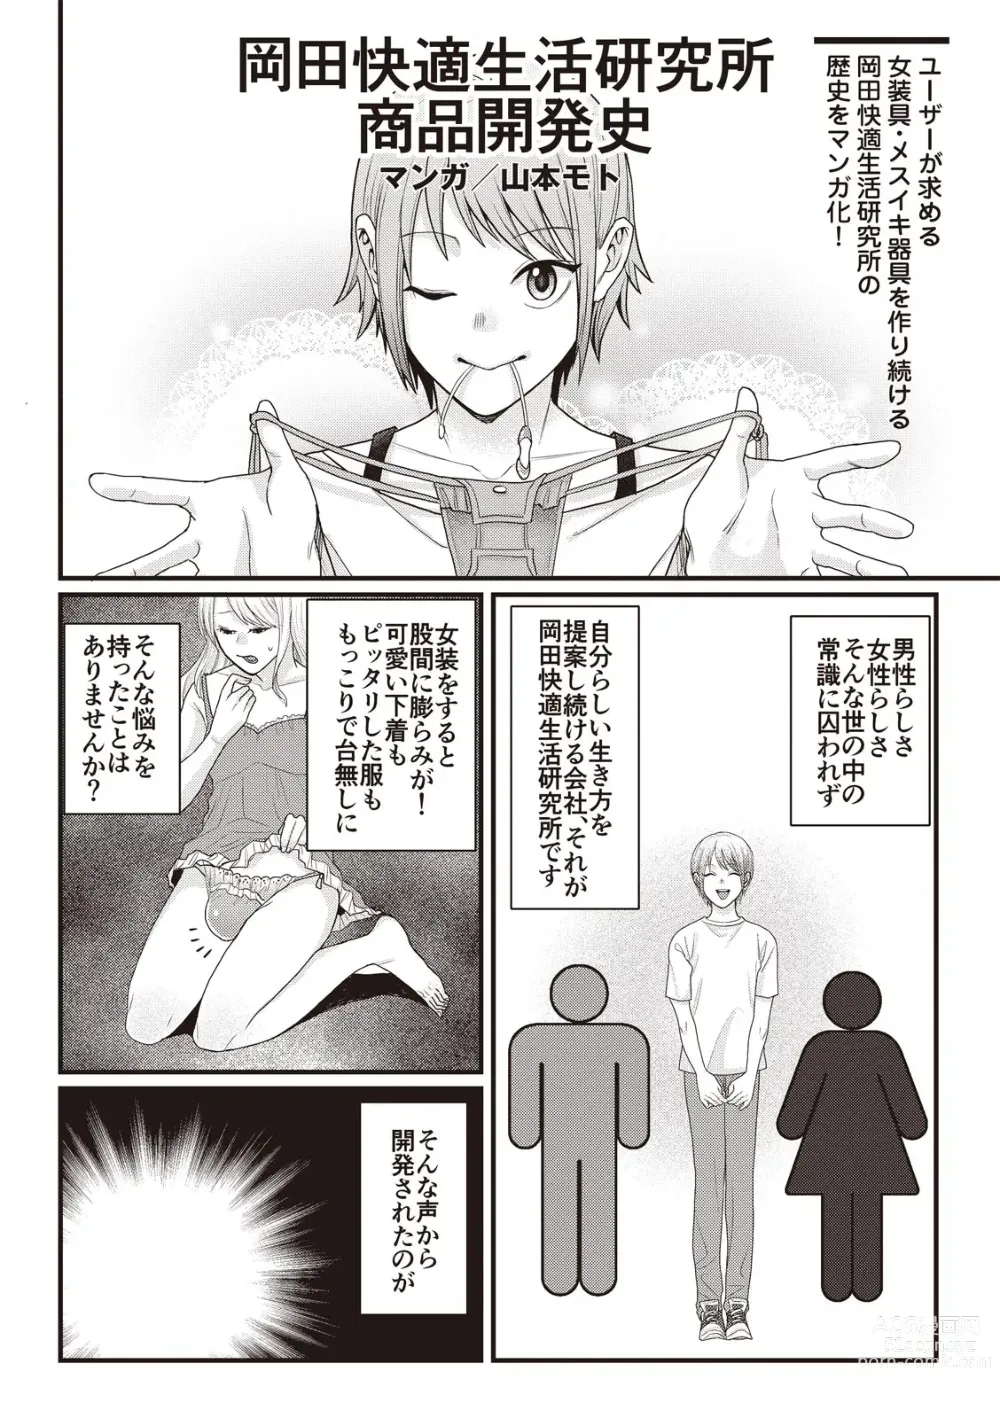 Page 114 of manga Manga de Furikaeru Otokonoko 10-nenshi